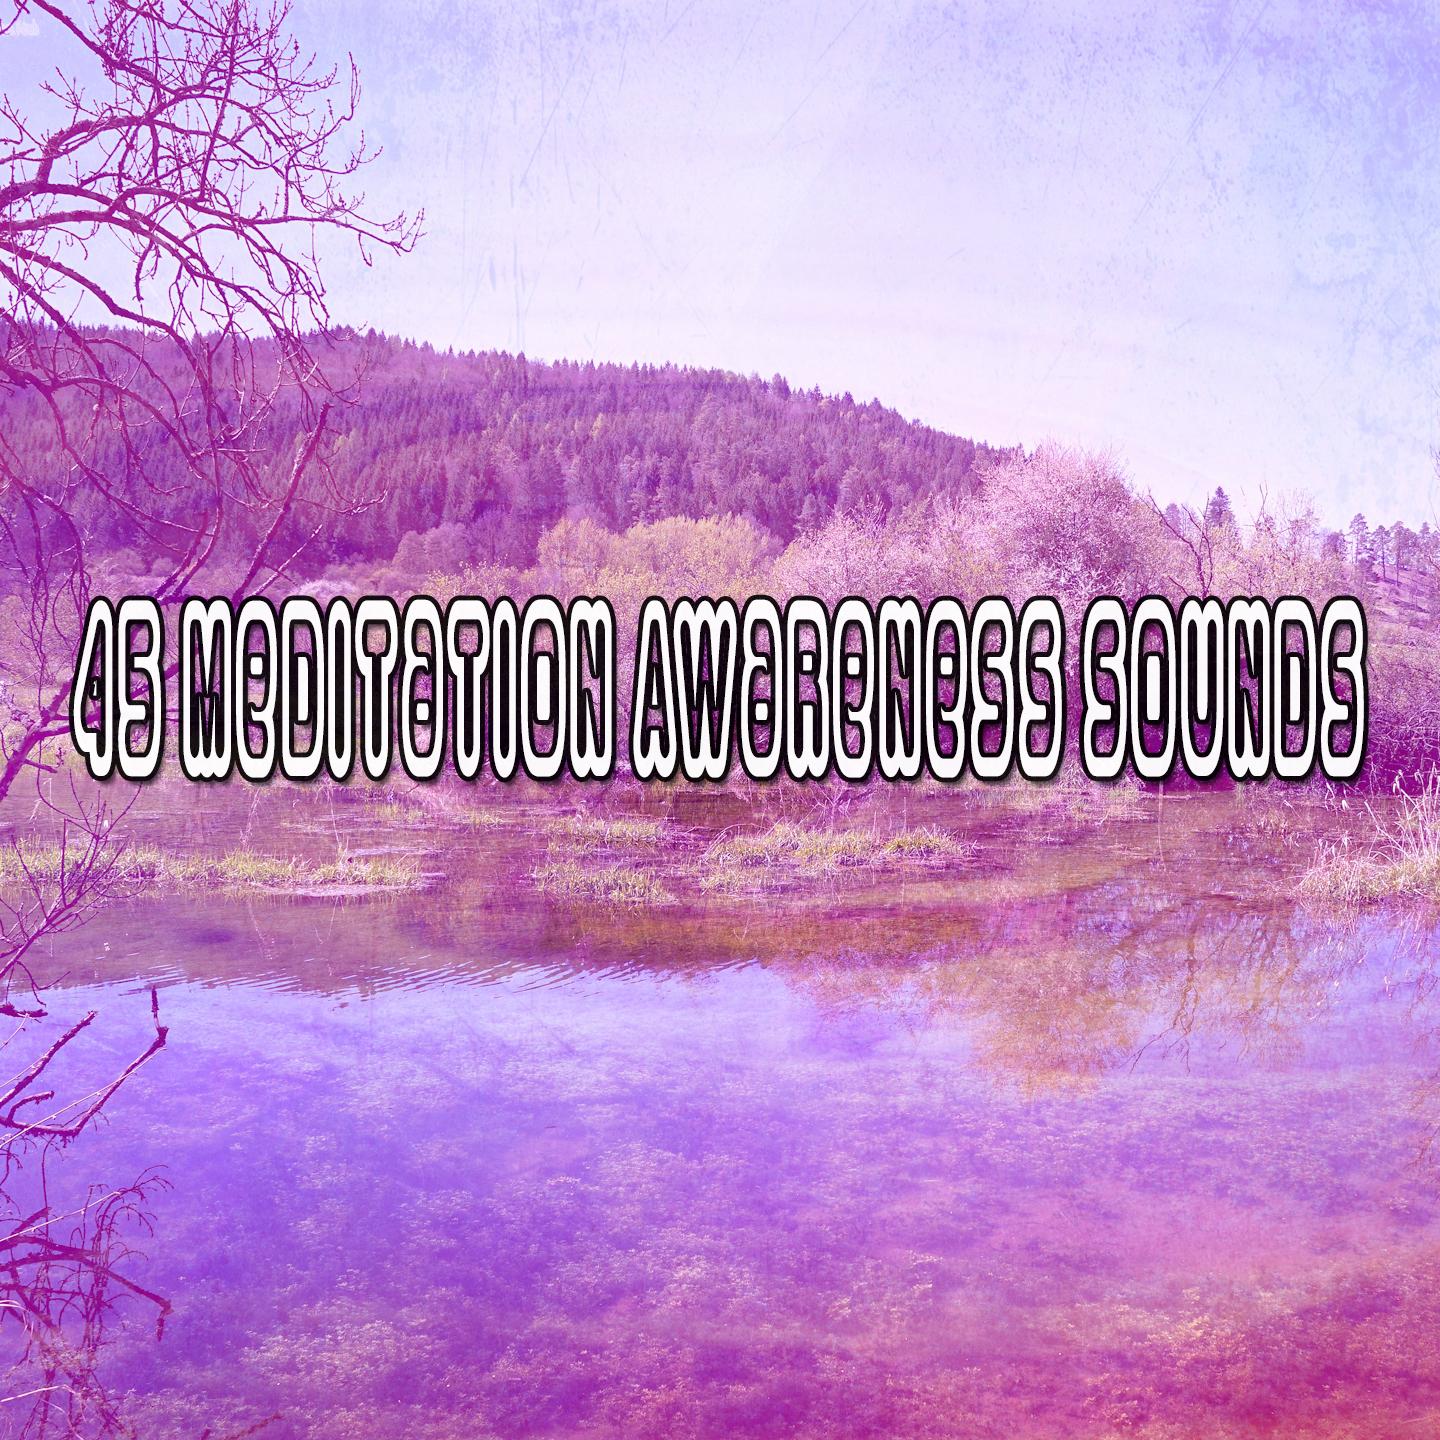 45 Meditation Awareness Sounds